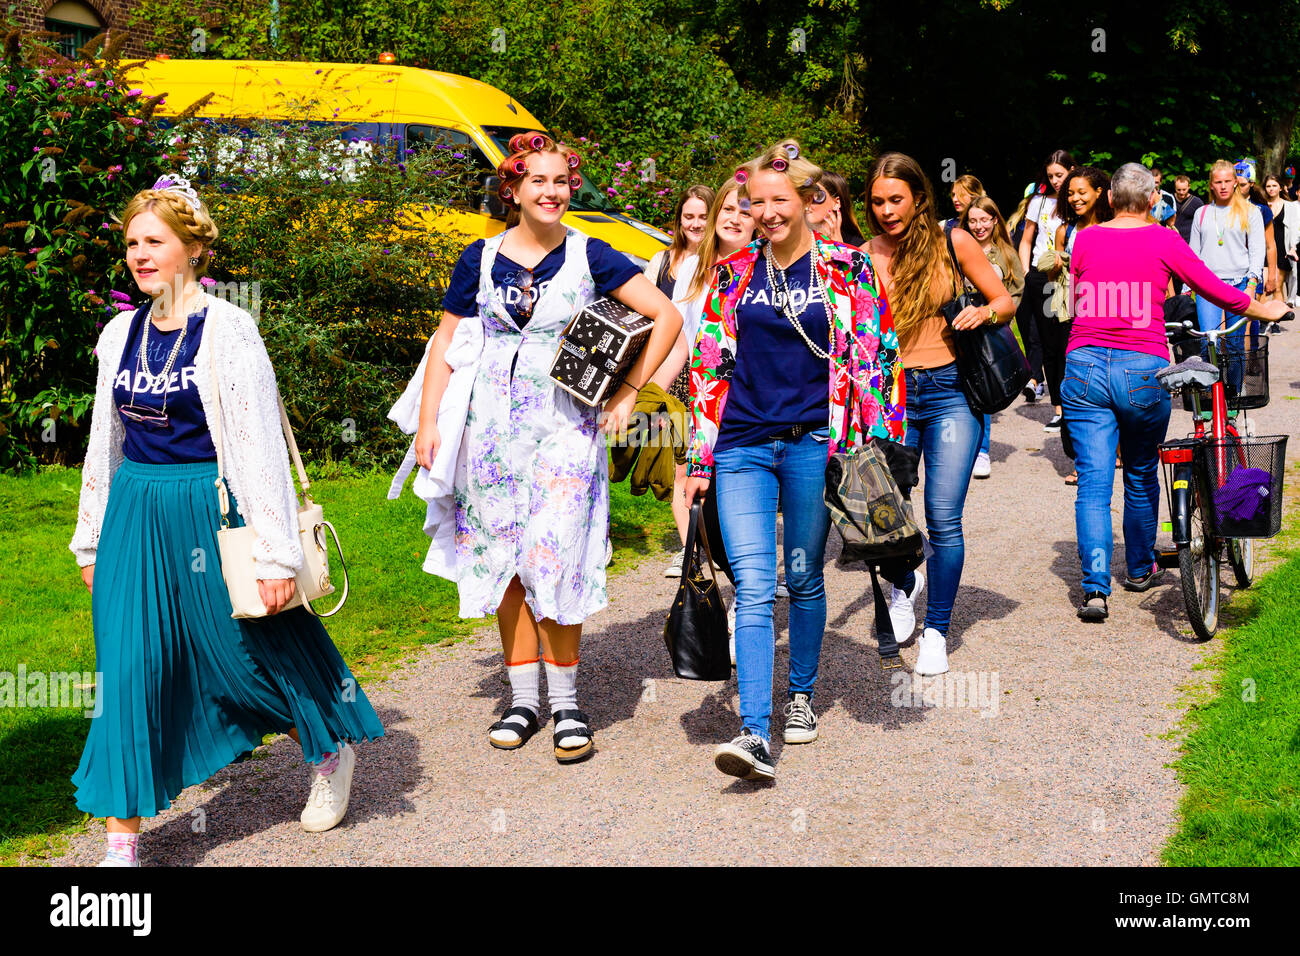 Lund, Schweden - 24. August 2016: Gruppe von Studentin Sponsoren (Fadder) und Studenten zu Fuß durch im öffentlichen Park auf dem Weg zur Stockfoto